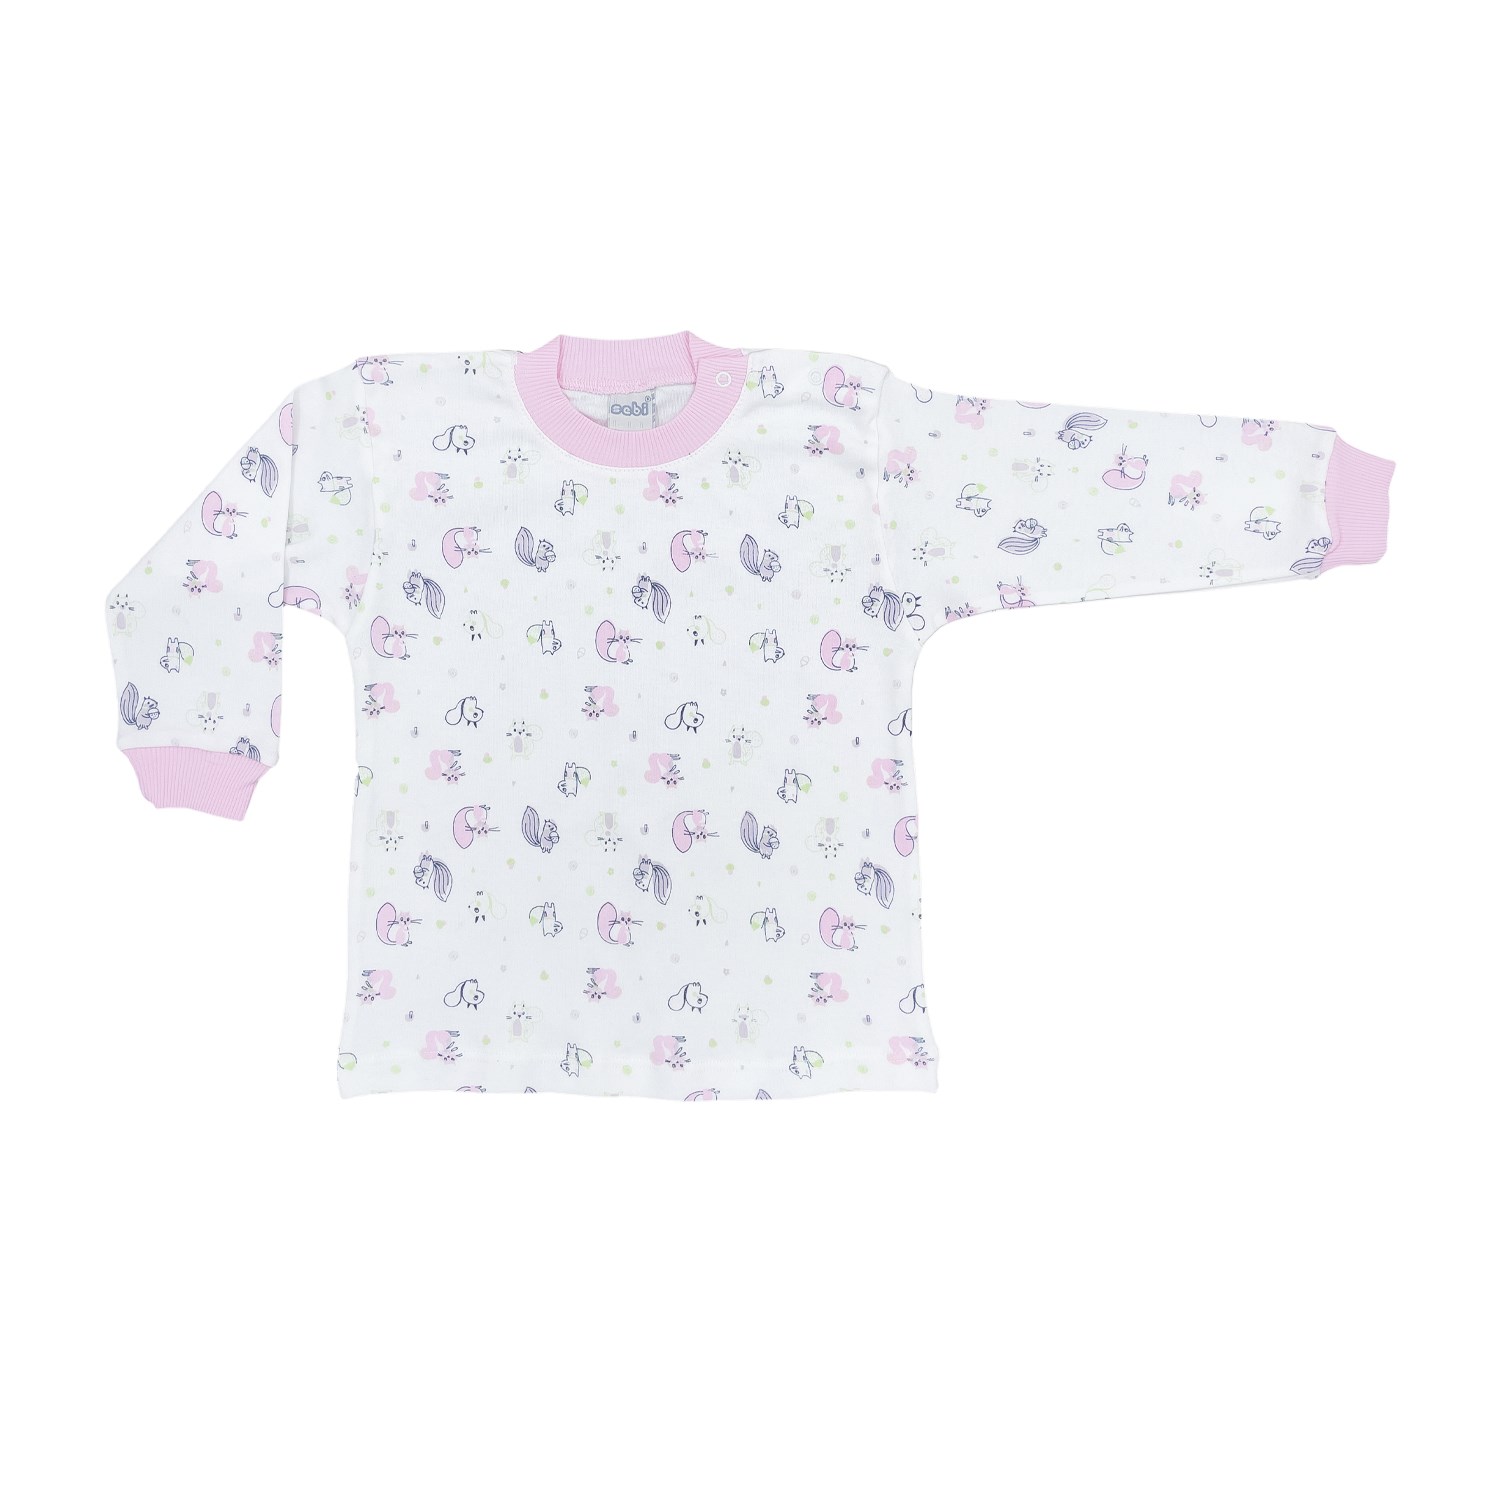 Sebi Bebe Sincap Baskılı Bebek Pijama Takımı 2416 Pembe